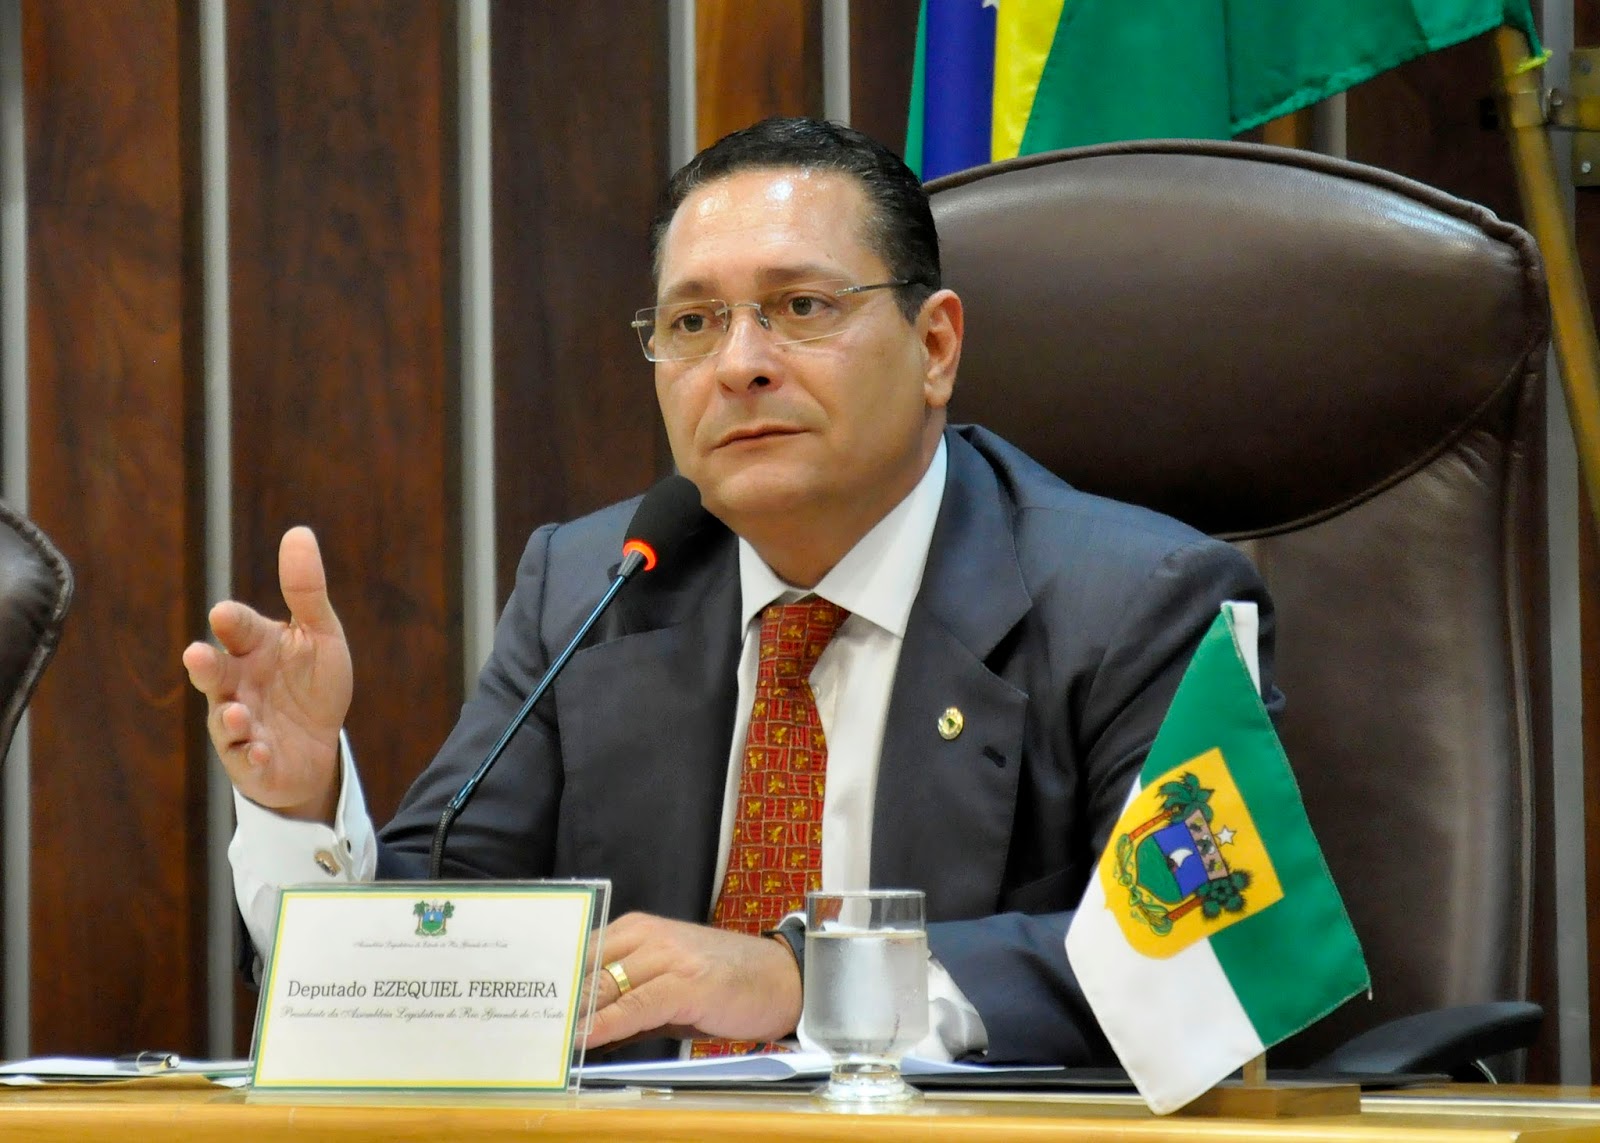 Sinal Fechado: Ezequiel Ferreira (PSDB) se torna réu no STF e defesa estranha